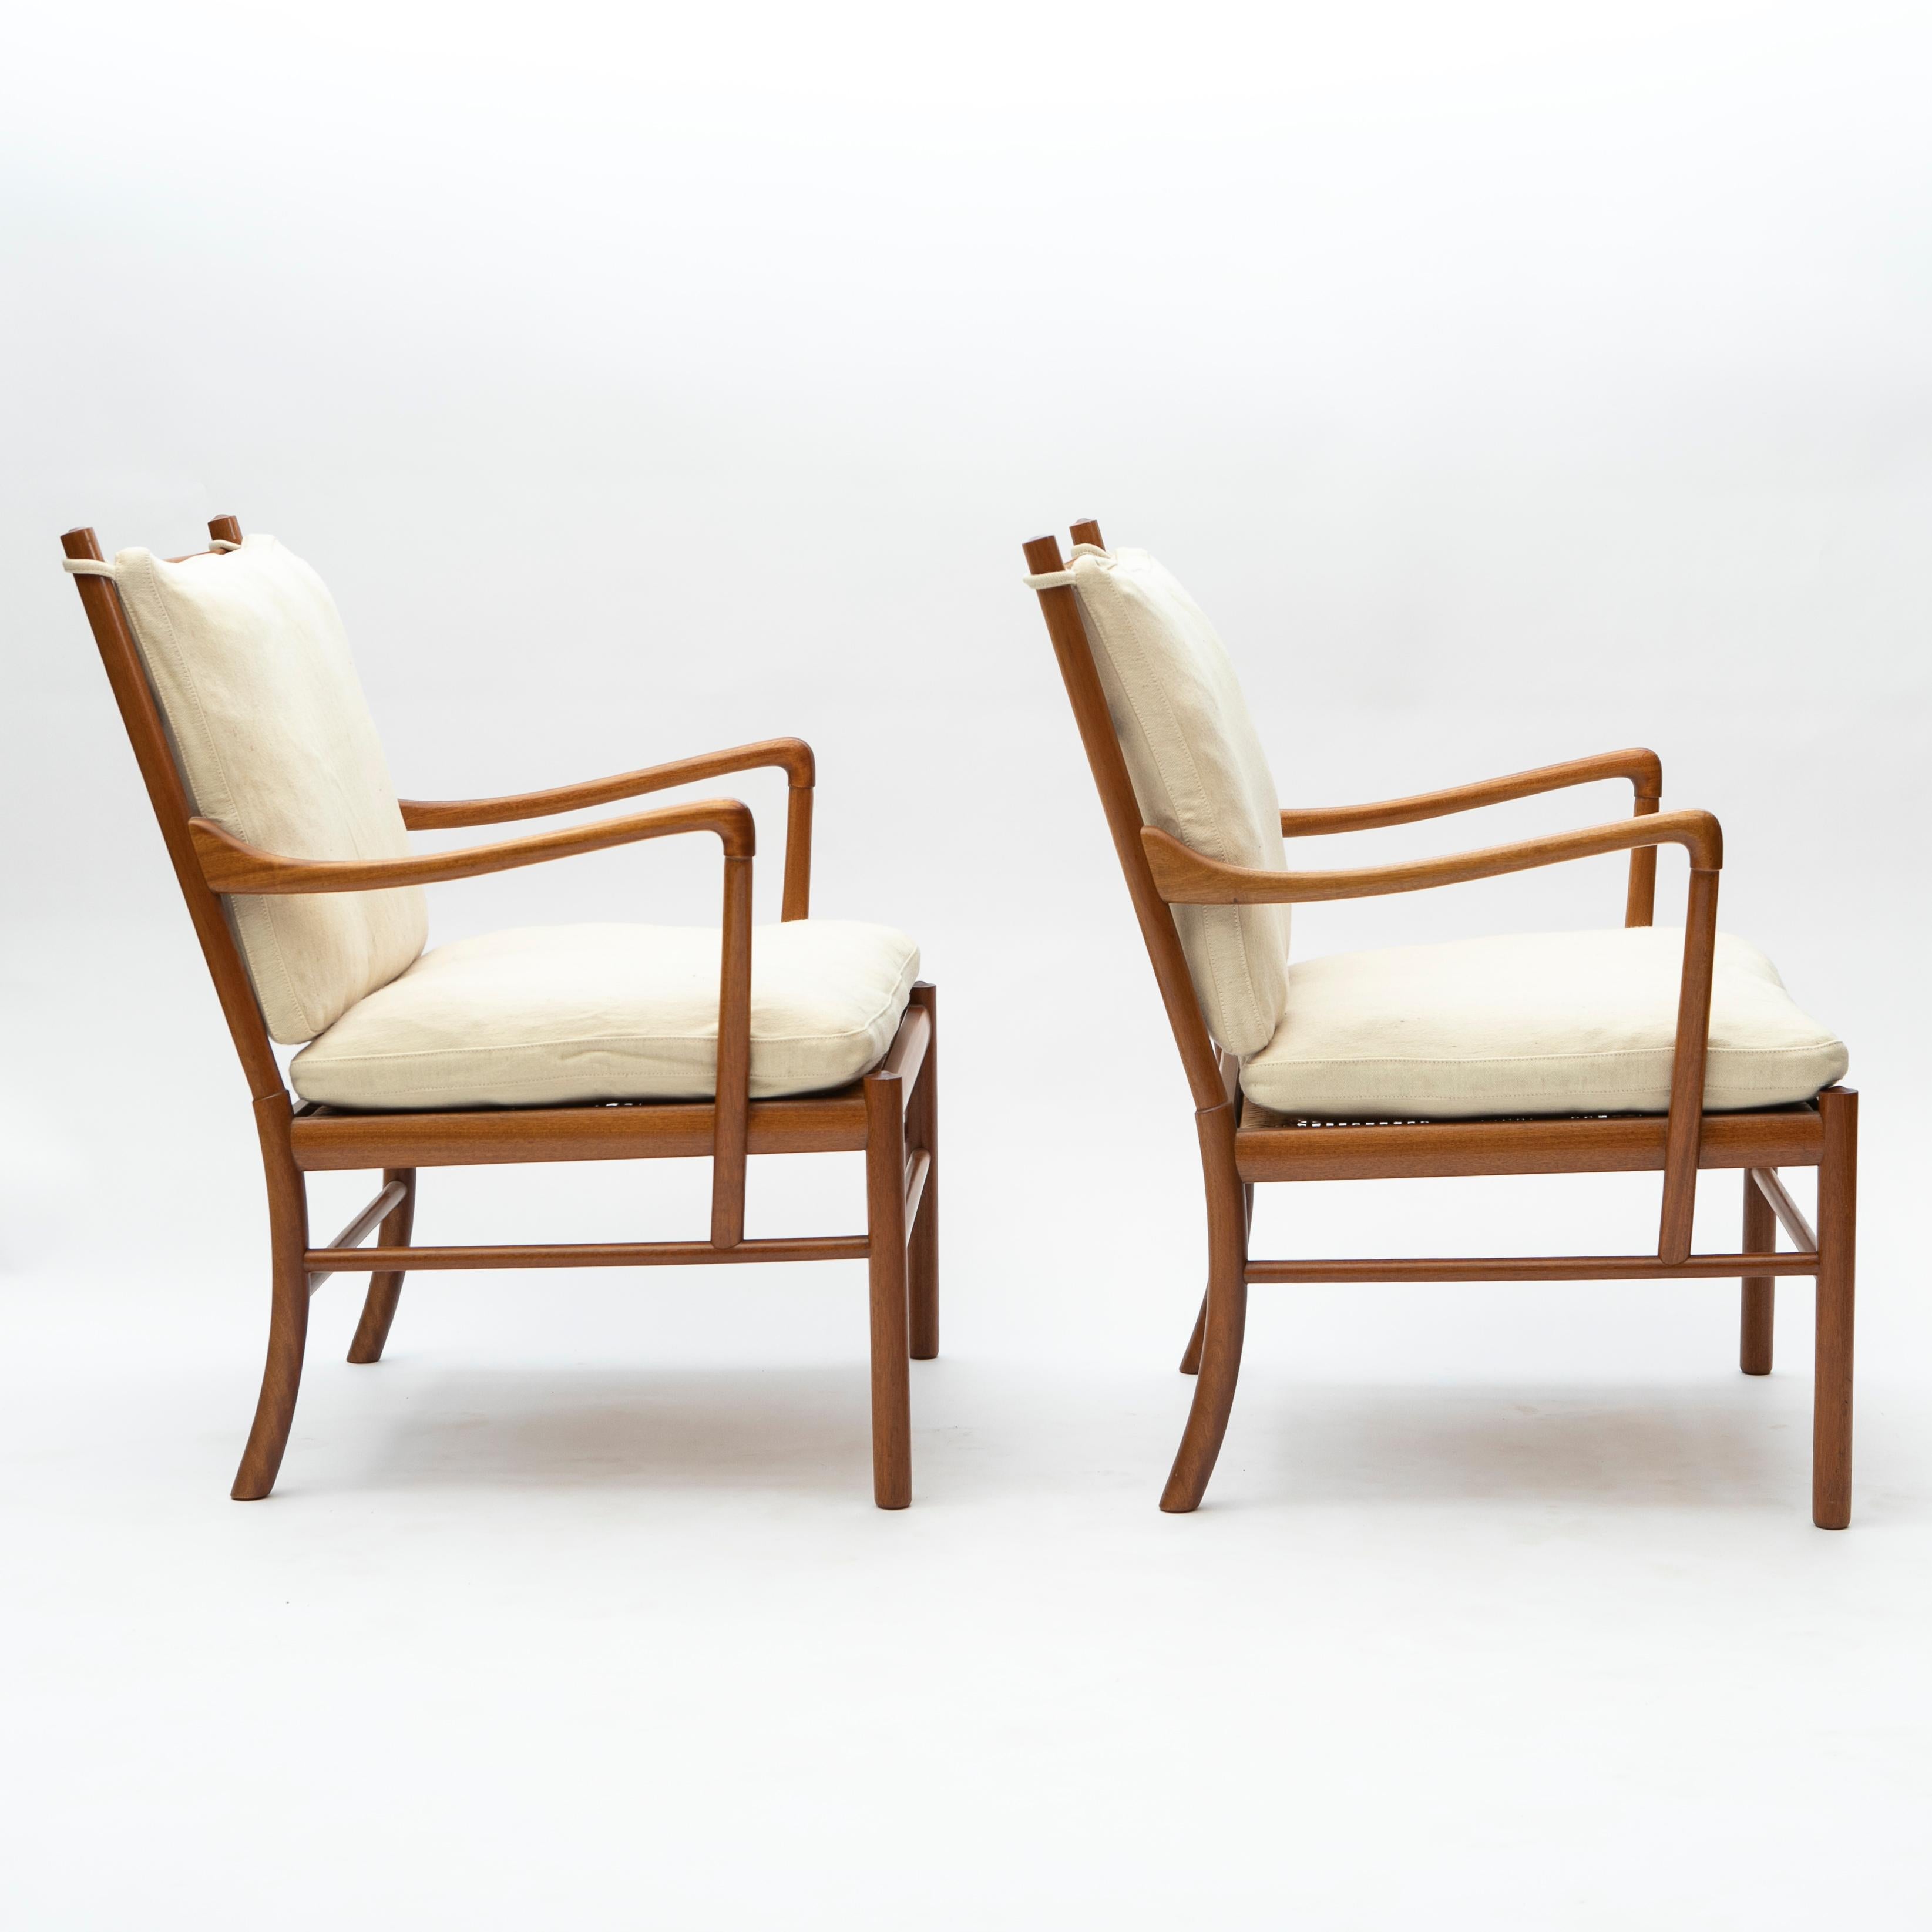 Ole Wanscher (Däne, 1903-1985).

Ein Paar Stühle im Kolonialstil, entworfen von Ole Wanscher.
Gefertigt aus massivem Mahagoni mit Sitz aus geflochtenem Rattanrohr und originellen, mit leichter Grönlandwolle bezogenen Kissen.

Produziert von